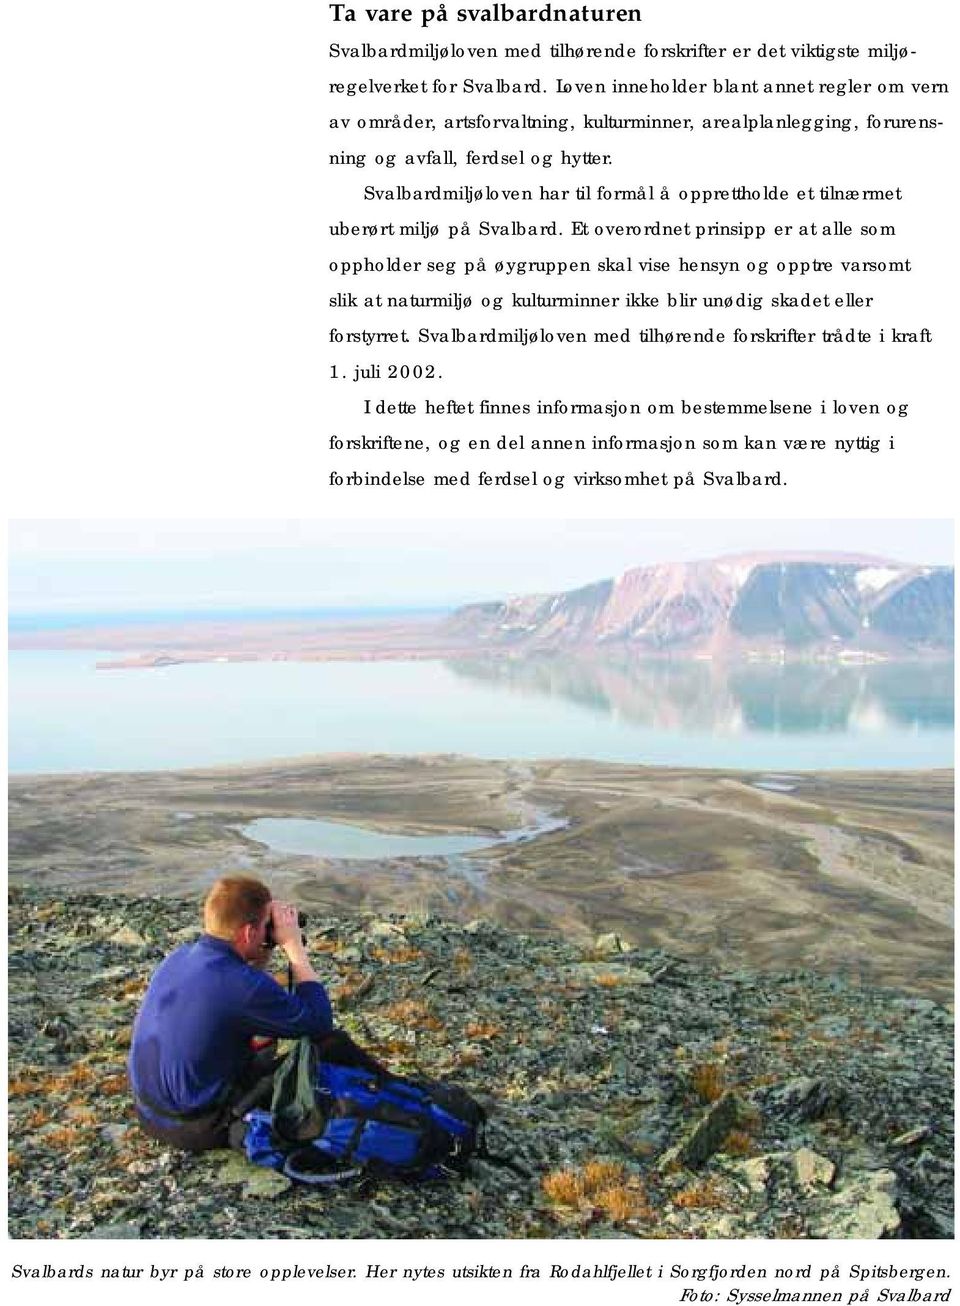 Svalbardmiljøloven har til formål å opprettholde et tilnærmet uberørt miljø på Svalbard.